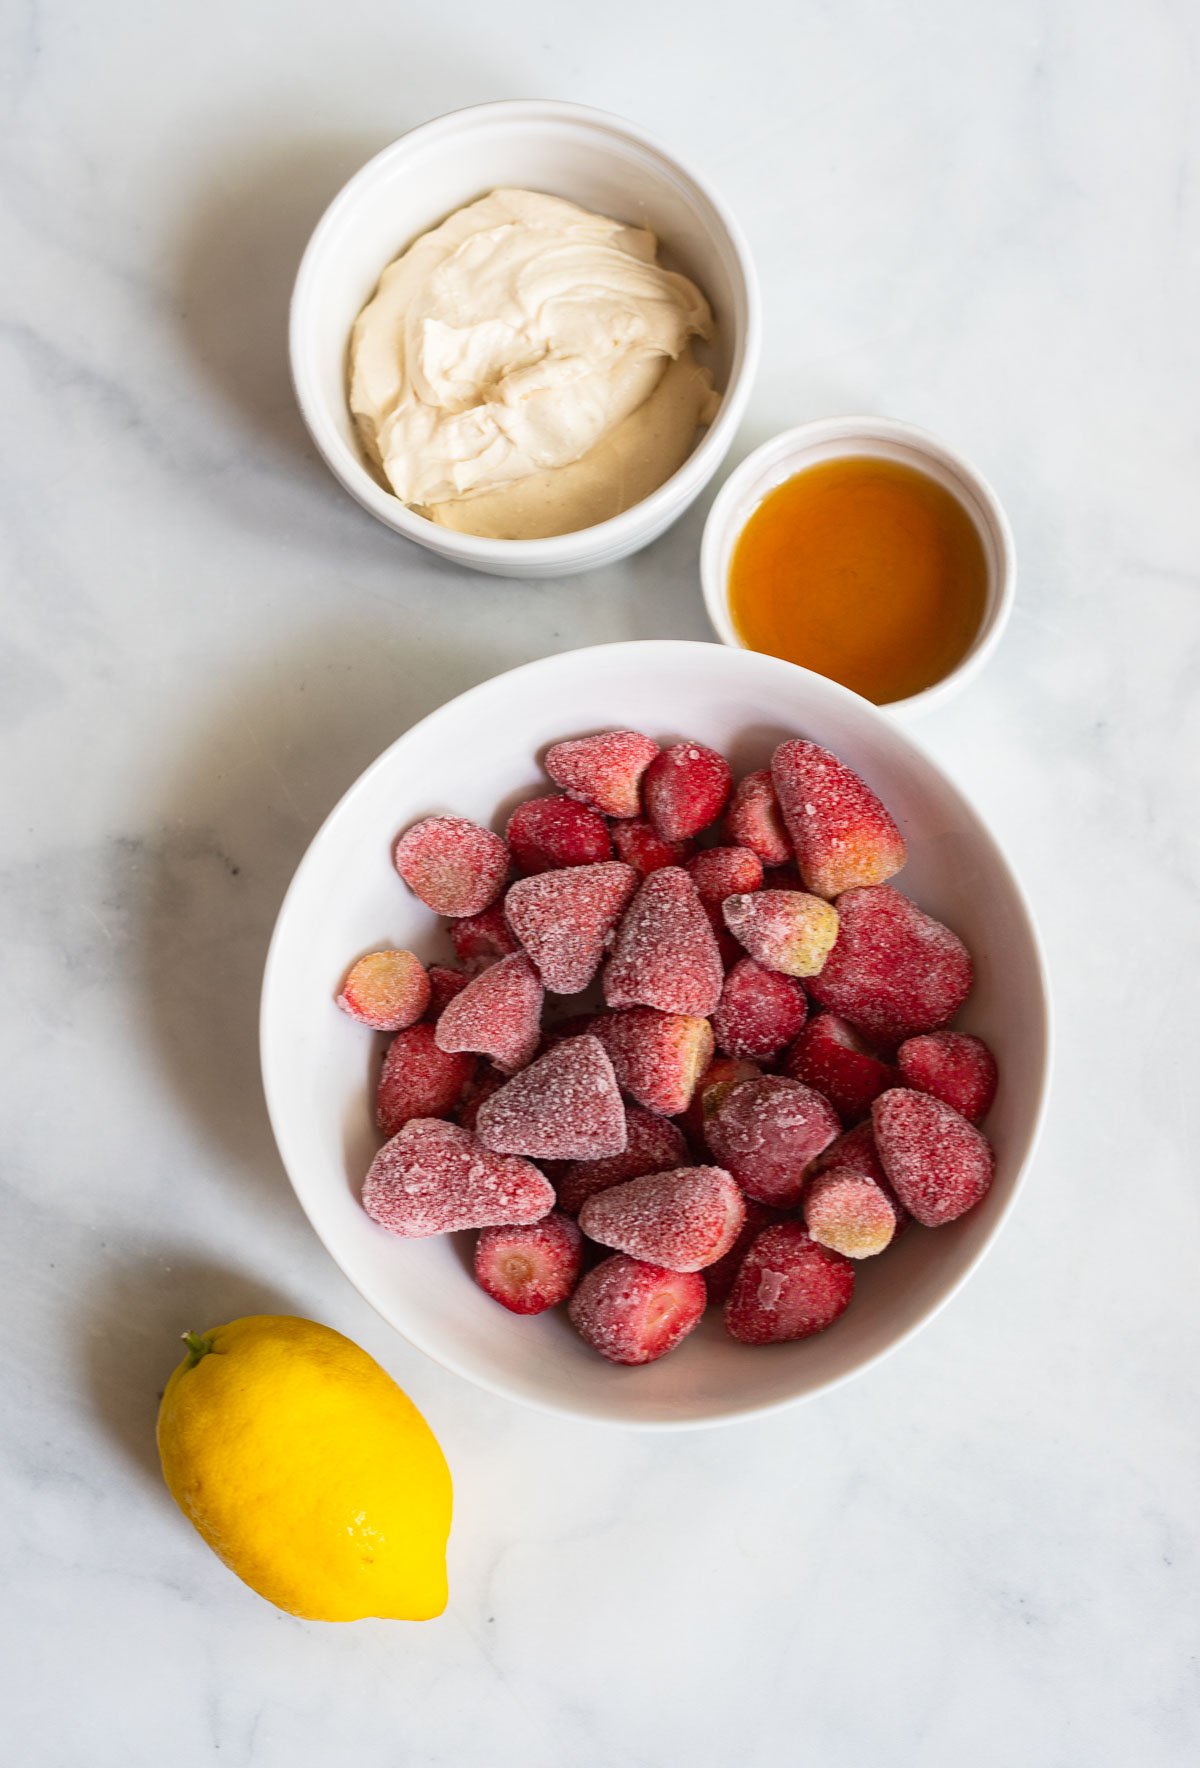 strawberry frozen yogurt ingredients in white bowls. 